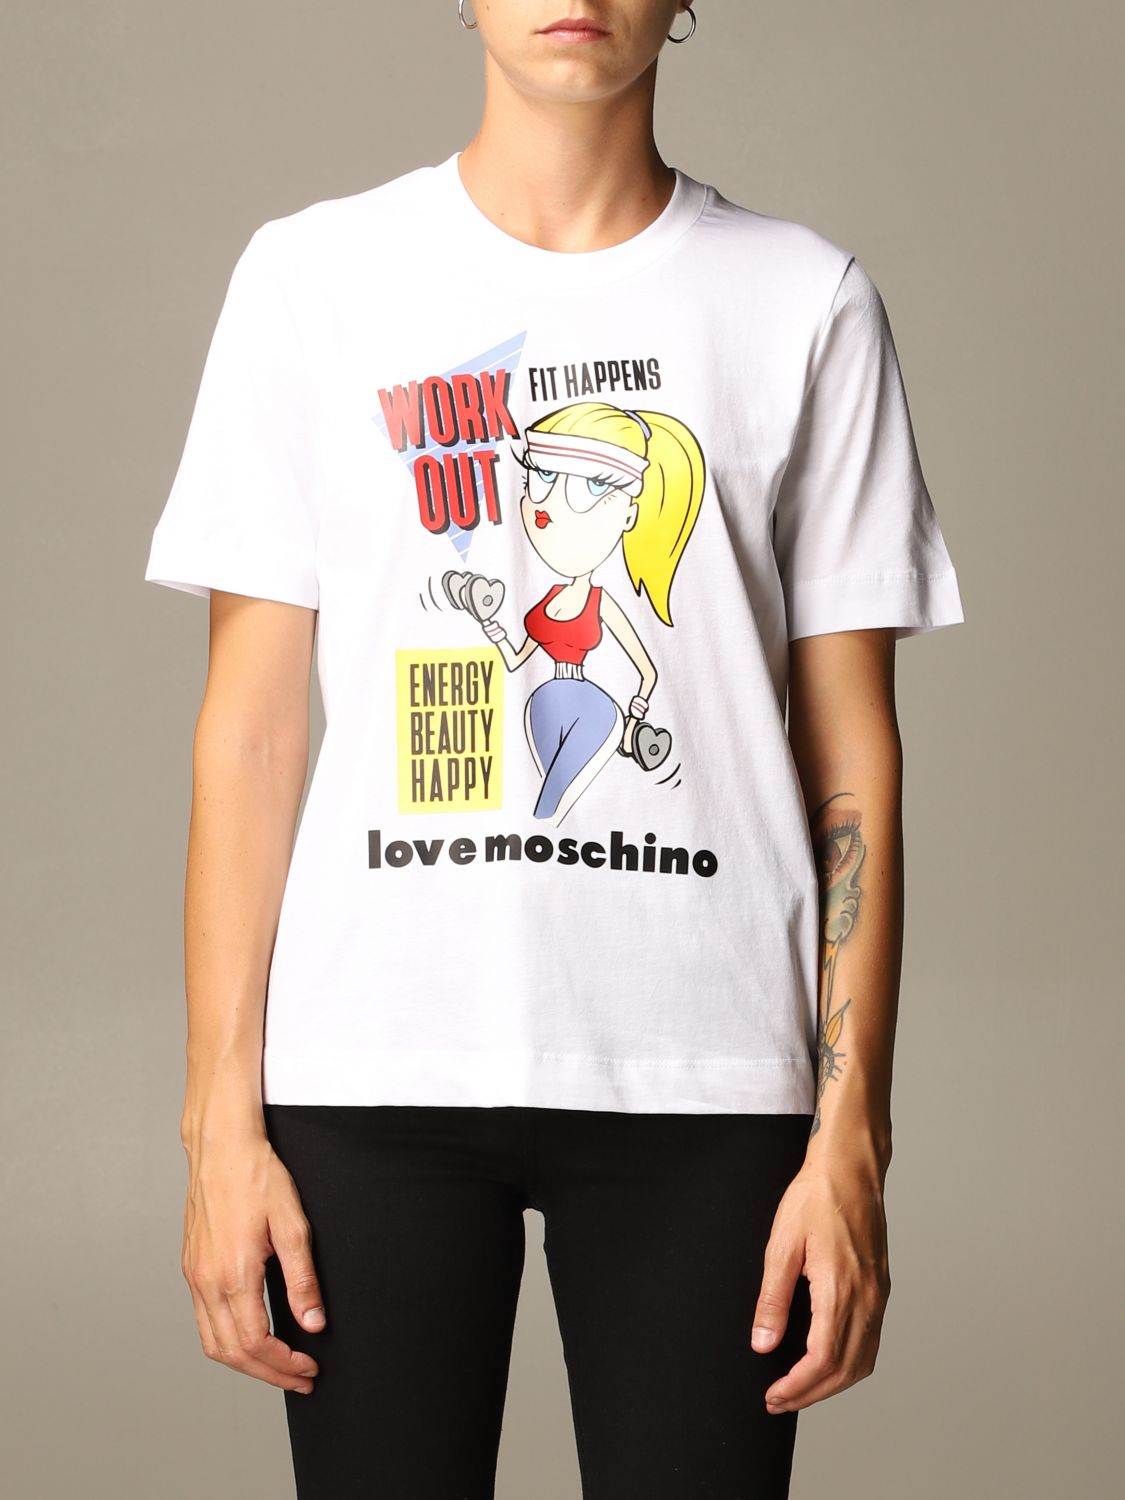 think love moschino t shirt